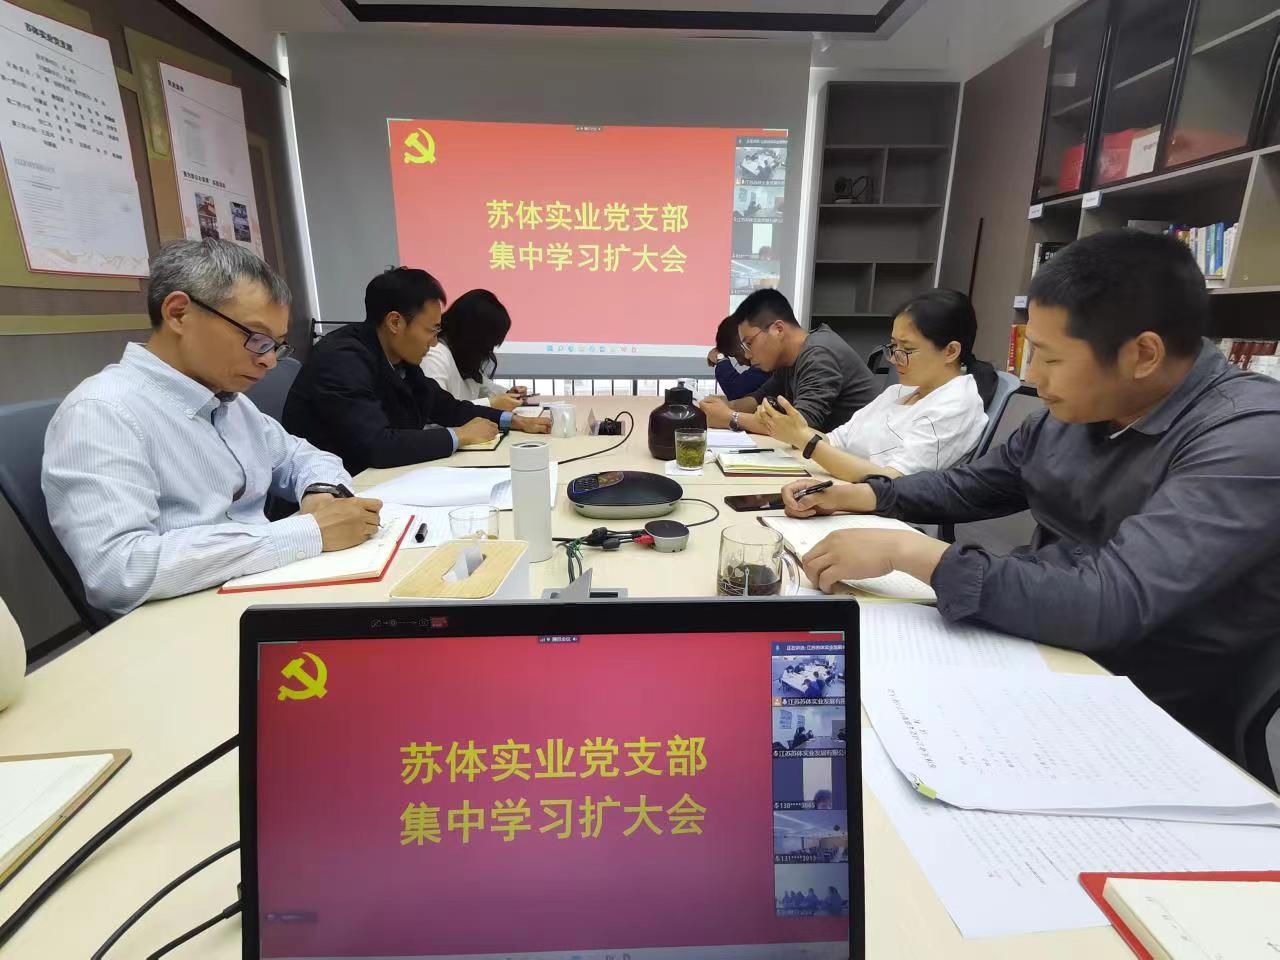 更团结·向未来 | 星空体育(中国)官方网站组织开展“同上一堂课 同心向未来”专题学习活动